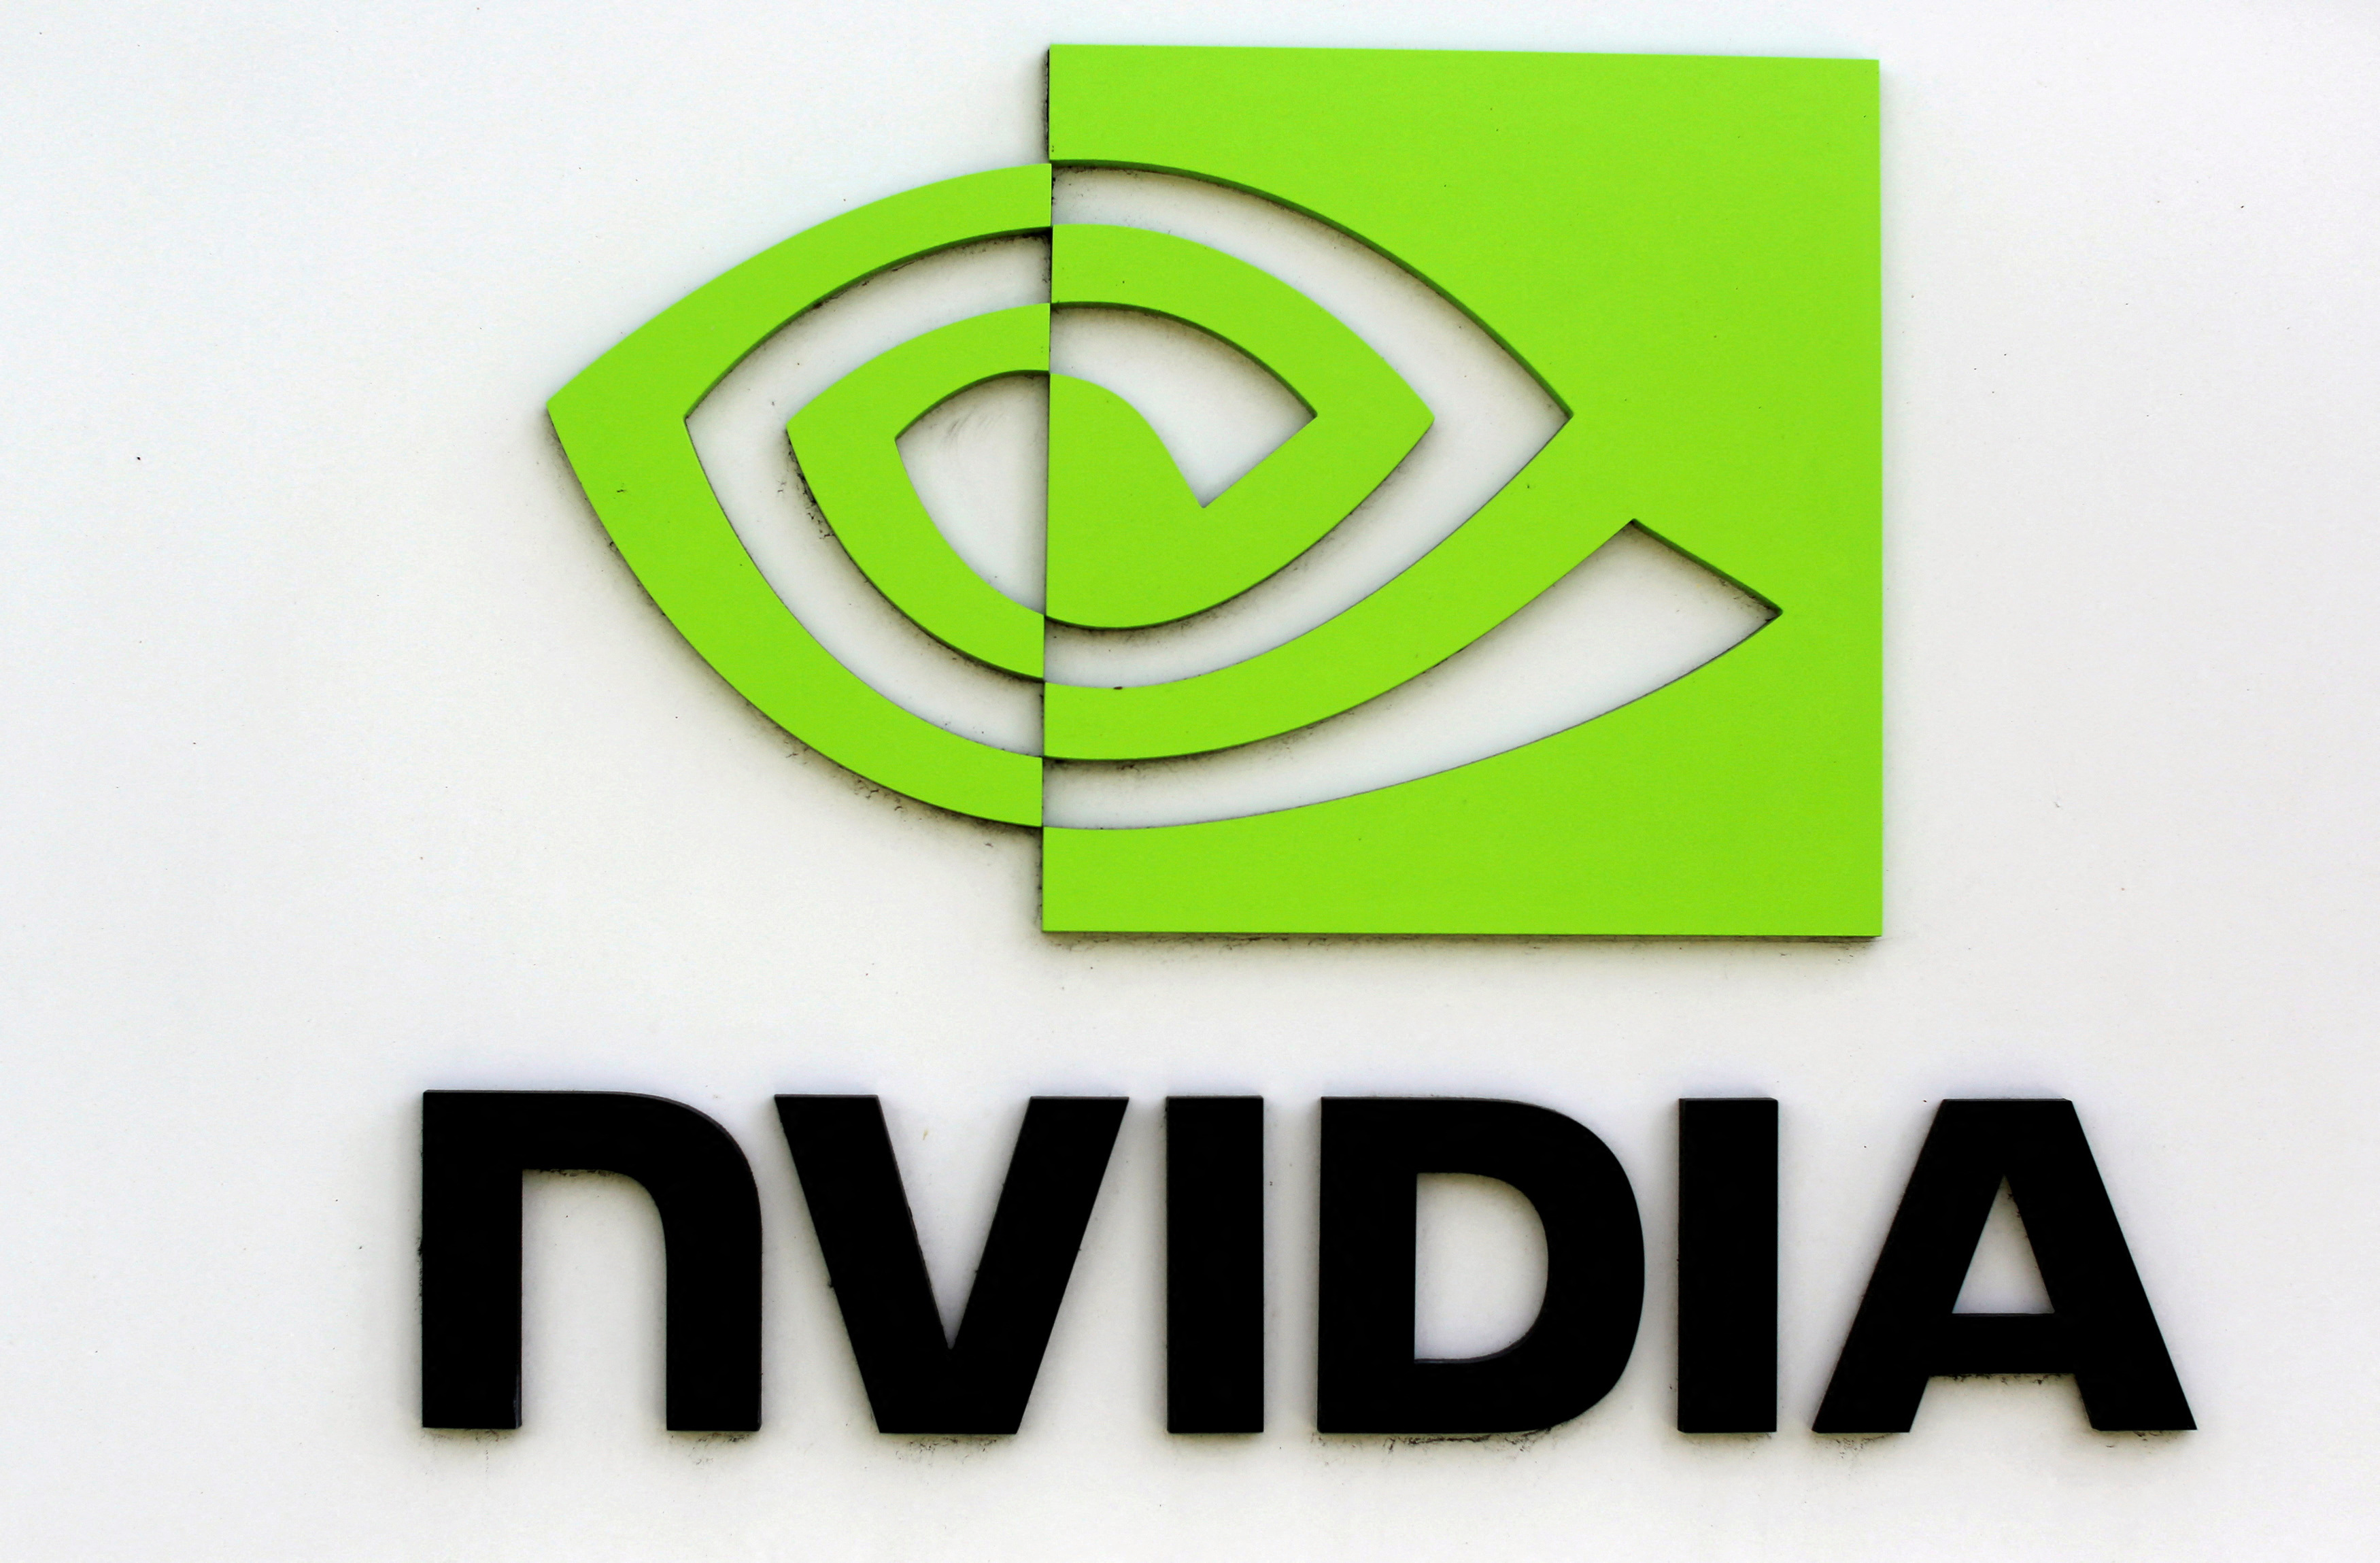 The logo of technology company Nvidia appears at its headquarters in Santa Clara